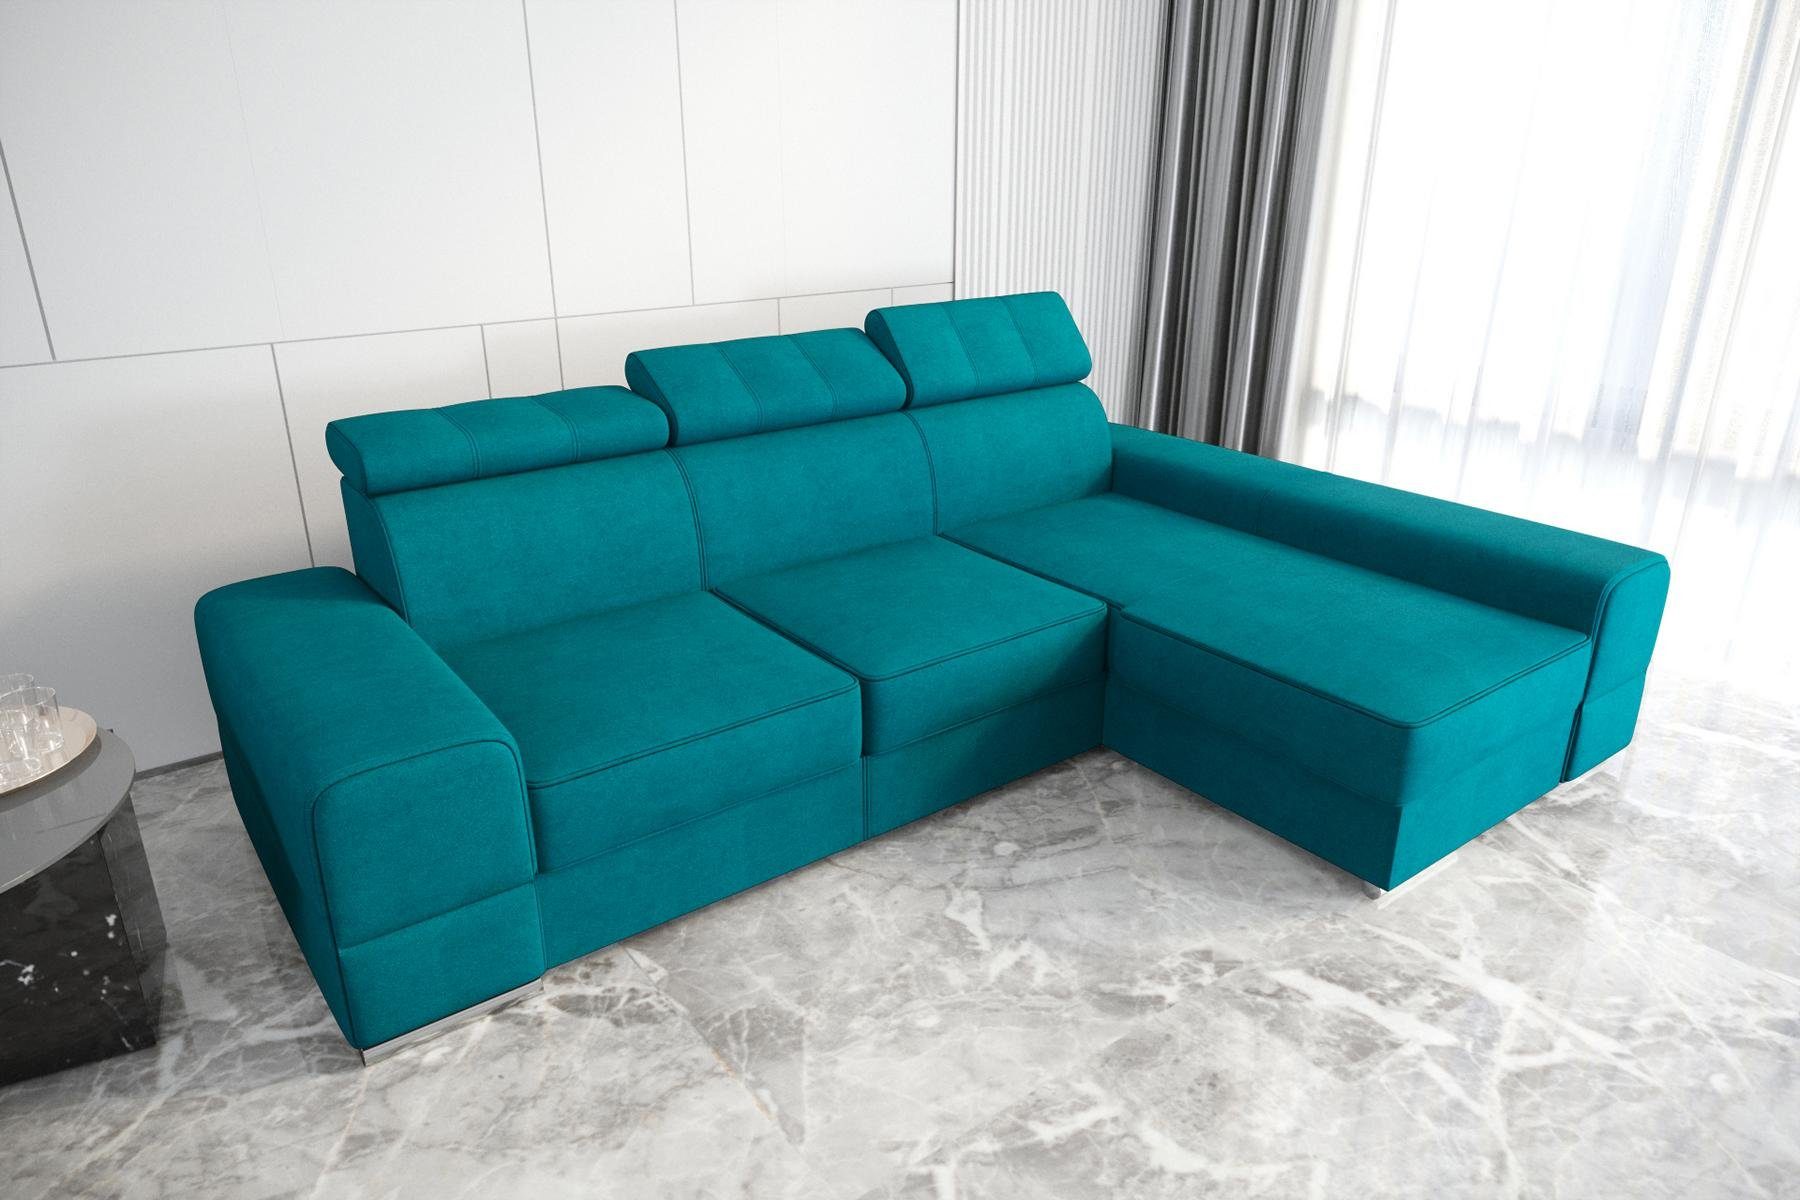 JVmoebel Ecksofa Designer Beiges Ecksofa L-Form Luxus Couch Wohnzimmer Möbel Neu, Made in Europe Blau